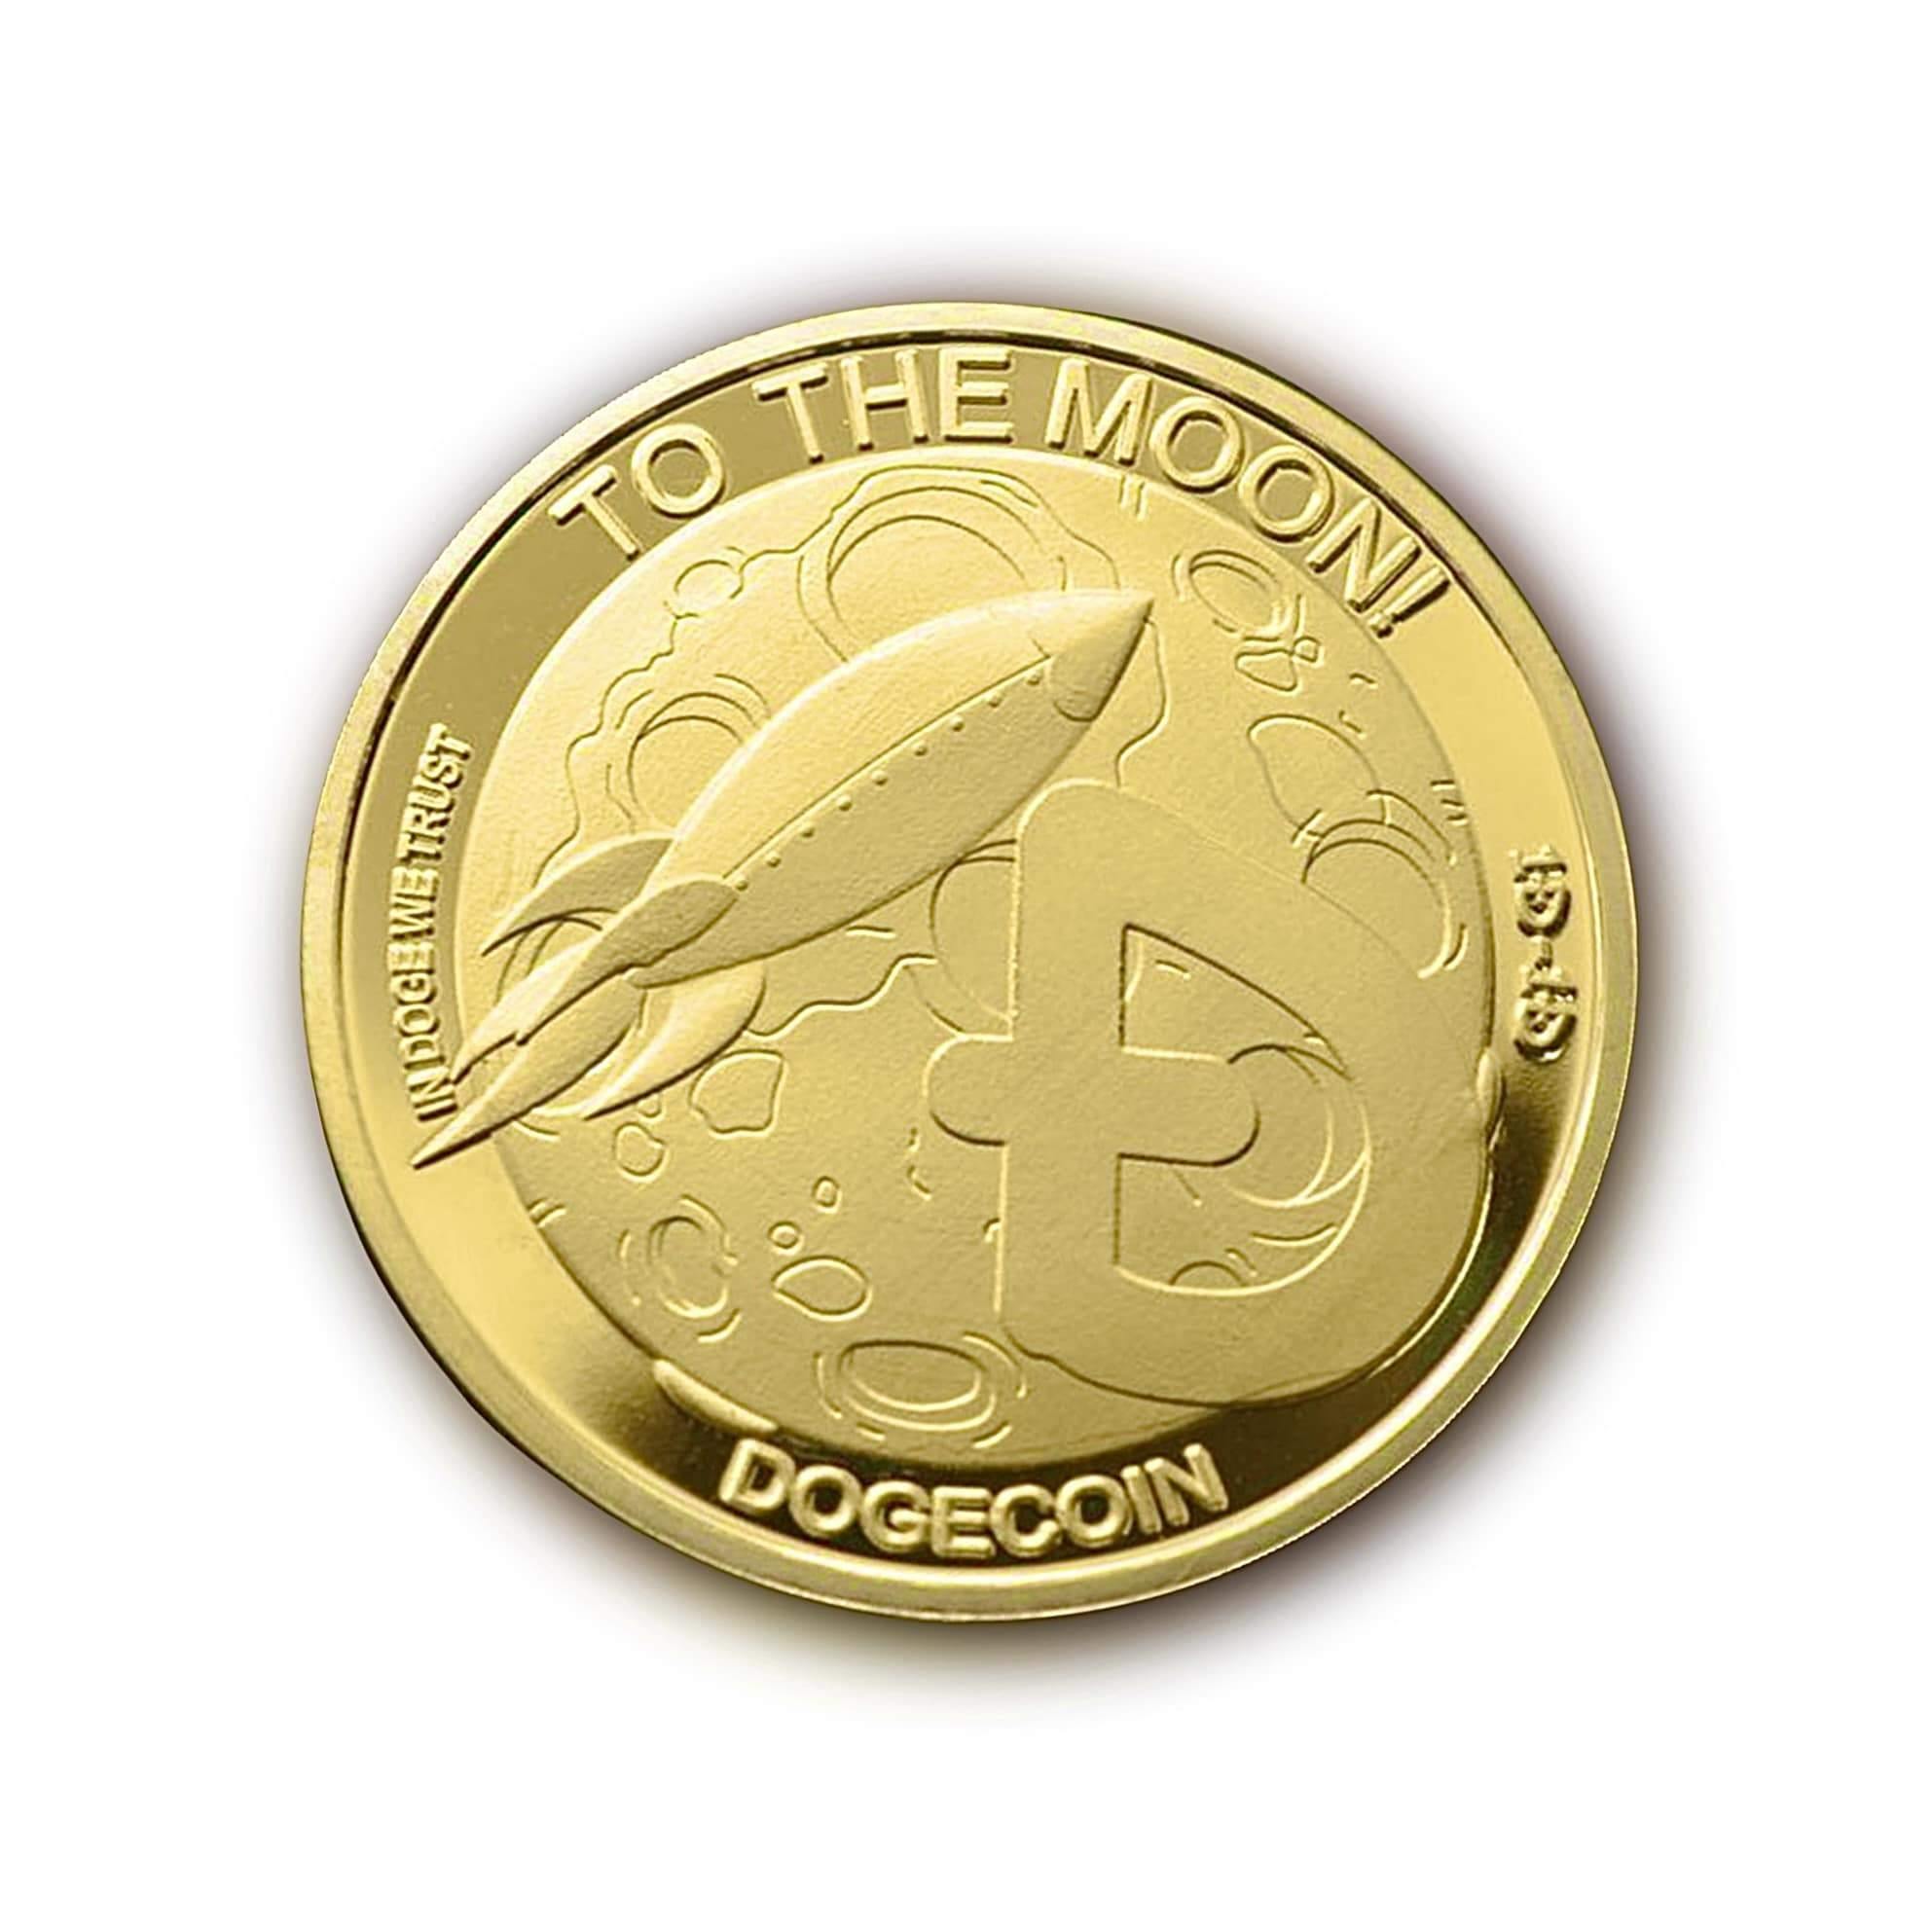 DOGECOIN COIN (COLORED) - ActuallyCrypto